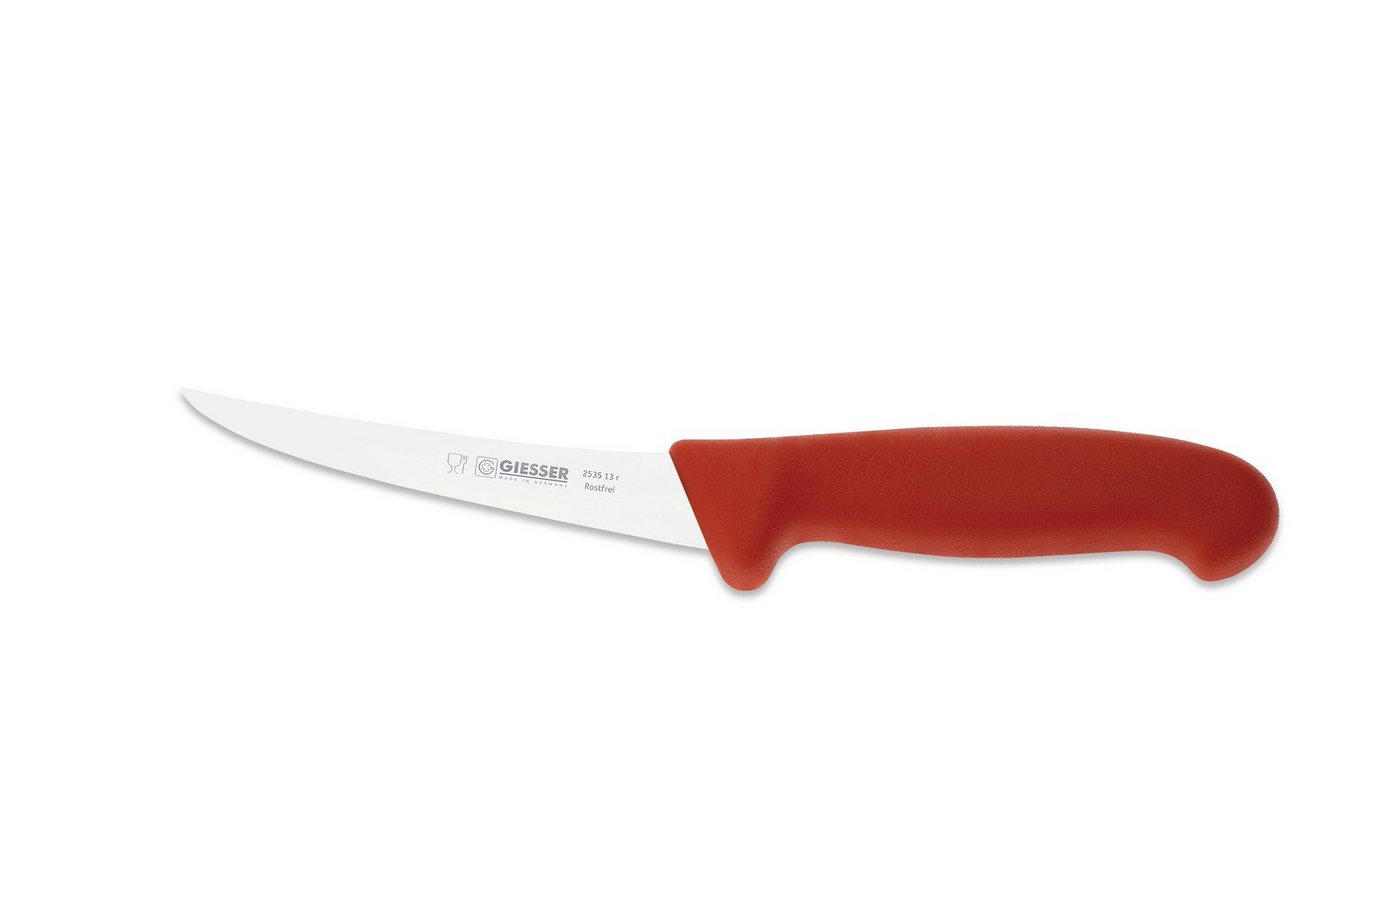 Giesser Messer Ausbeinmesser Fleischermesser 2505 13-17, Klingenstärke: sehr flexibel, flexibel, stark von Giesser Messer